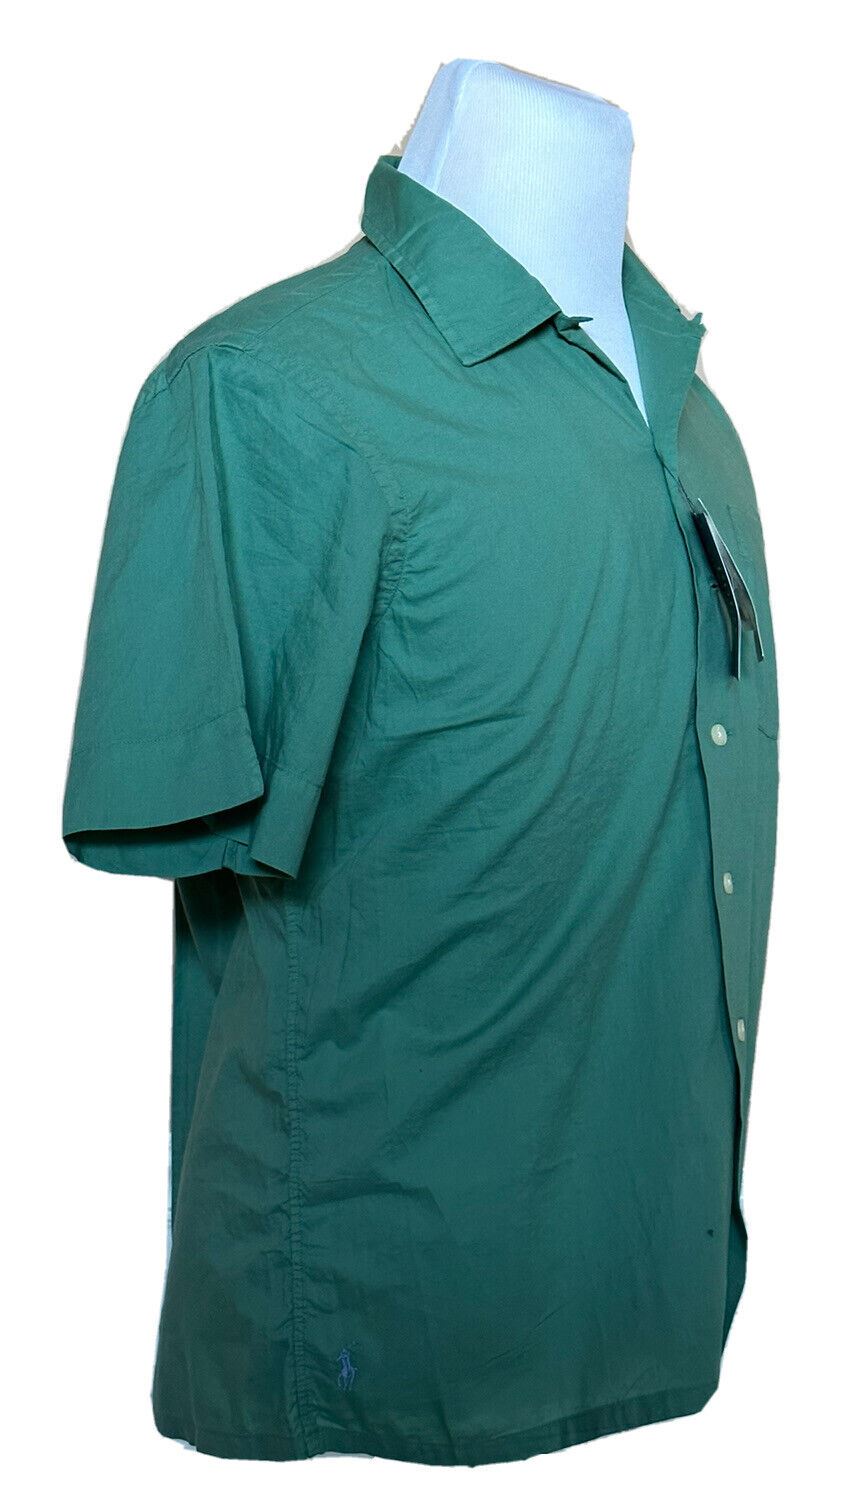 Мужская зеленая классическая рубашка с коротким рукавом NWT Polo Ralph Lauren 2XL, производство Индия